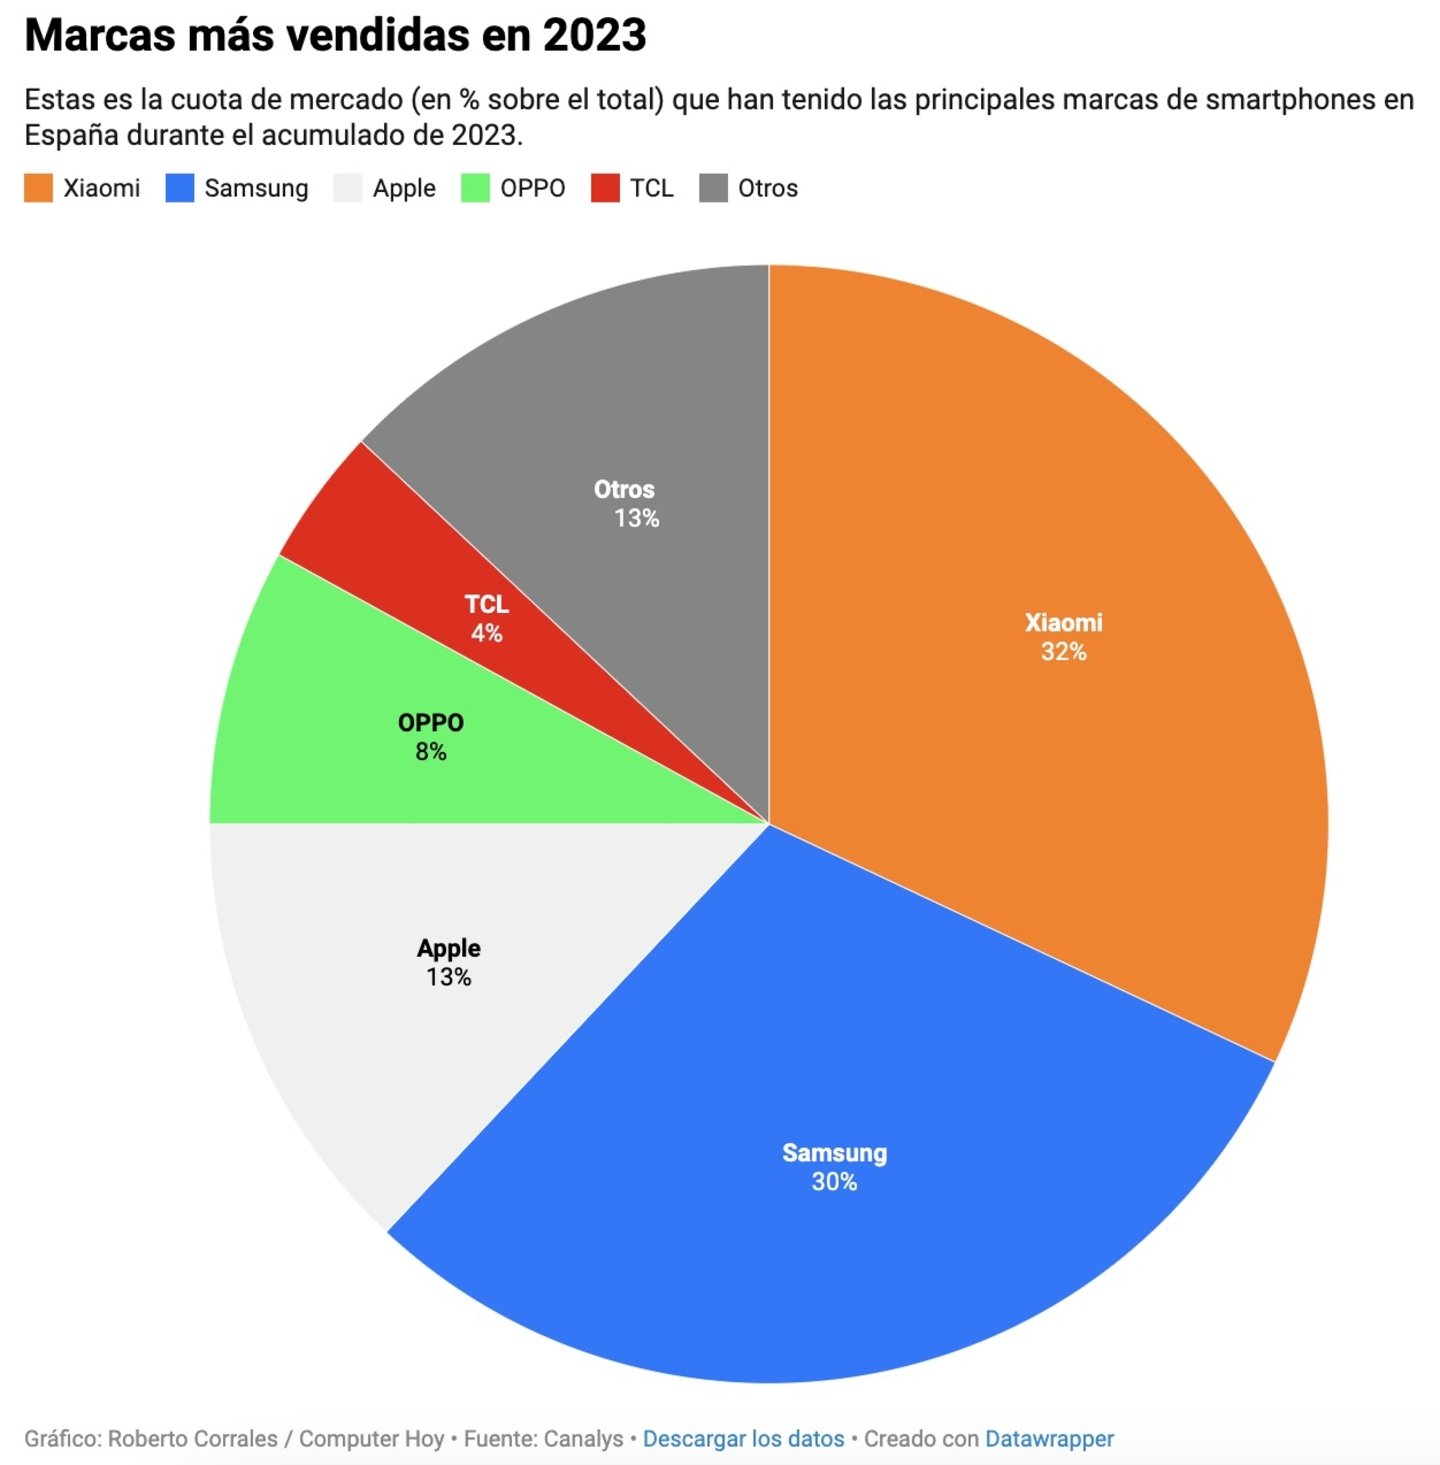 Marcas más vendidas en España durante 2023